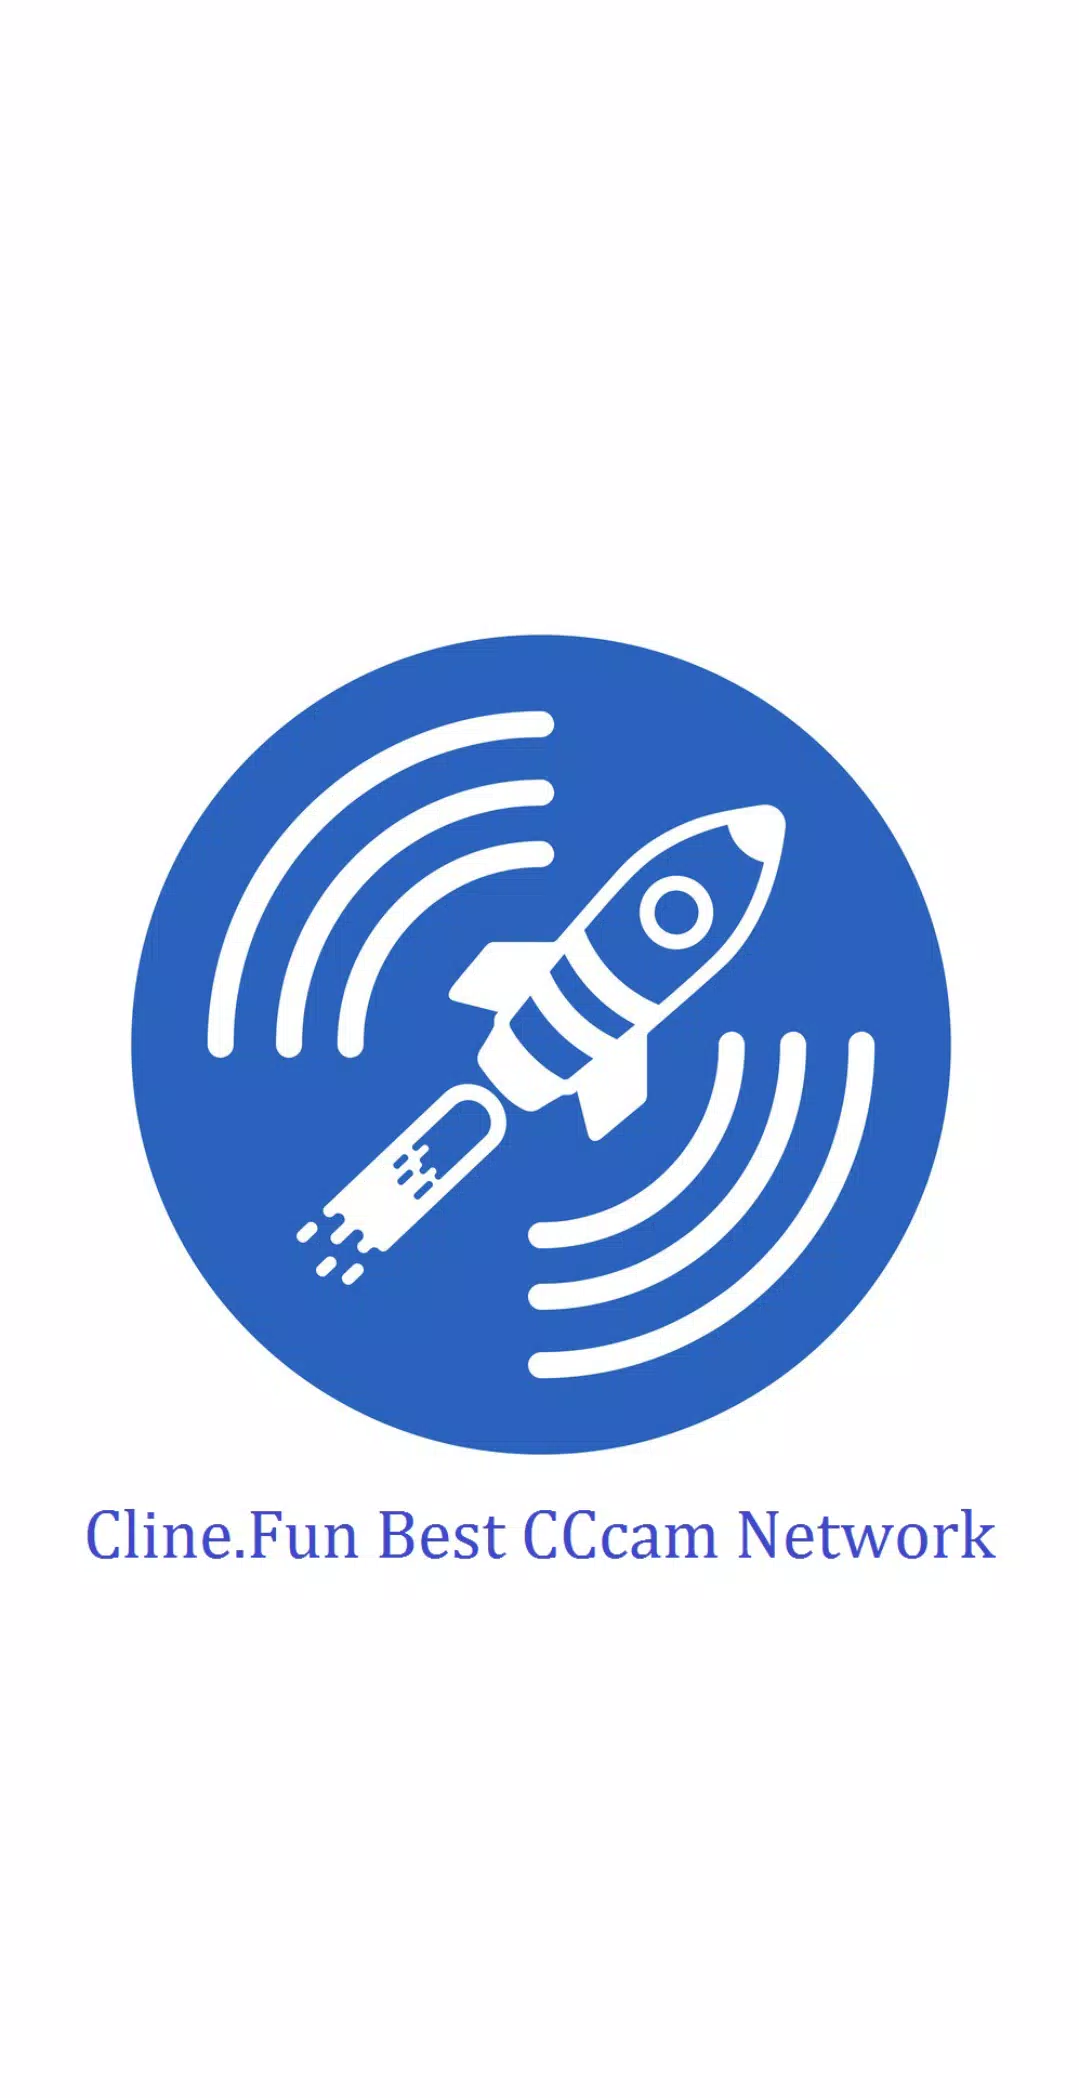 kompression et eller andet sted civilisere Cline.fun Panel - Best CCcam Server APK pour Android Télécharger